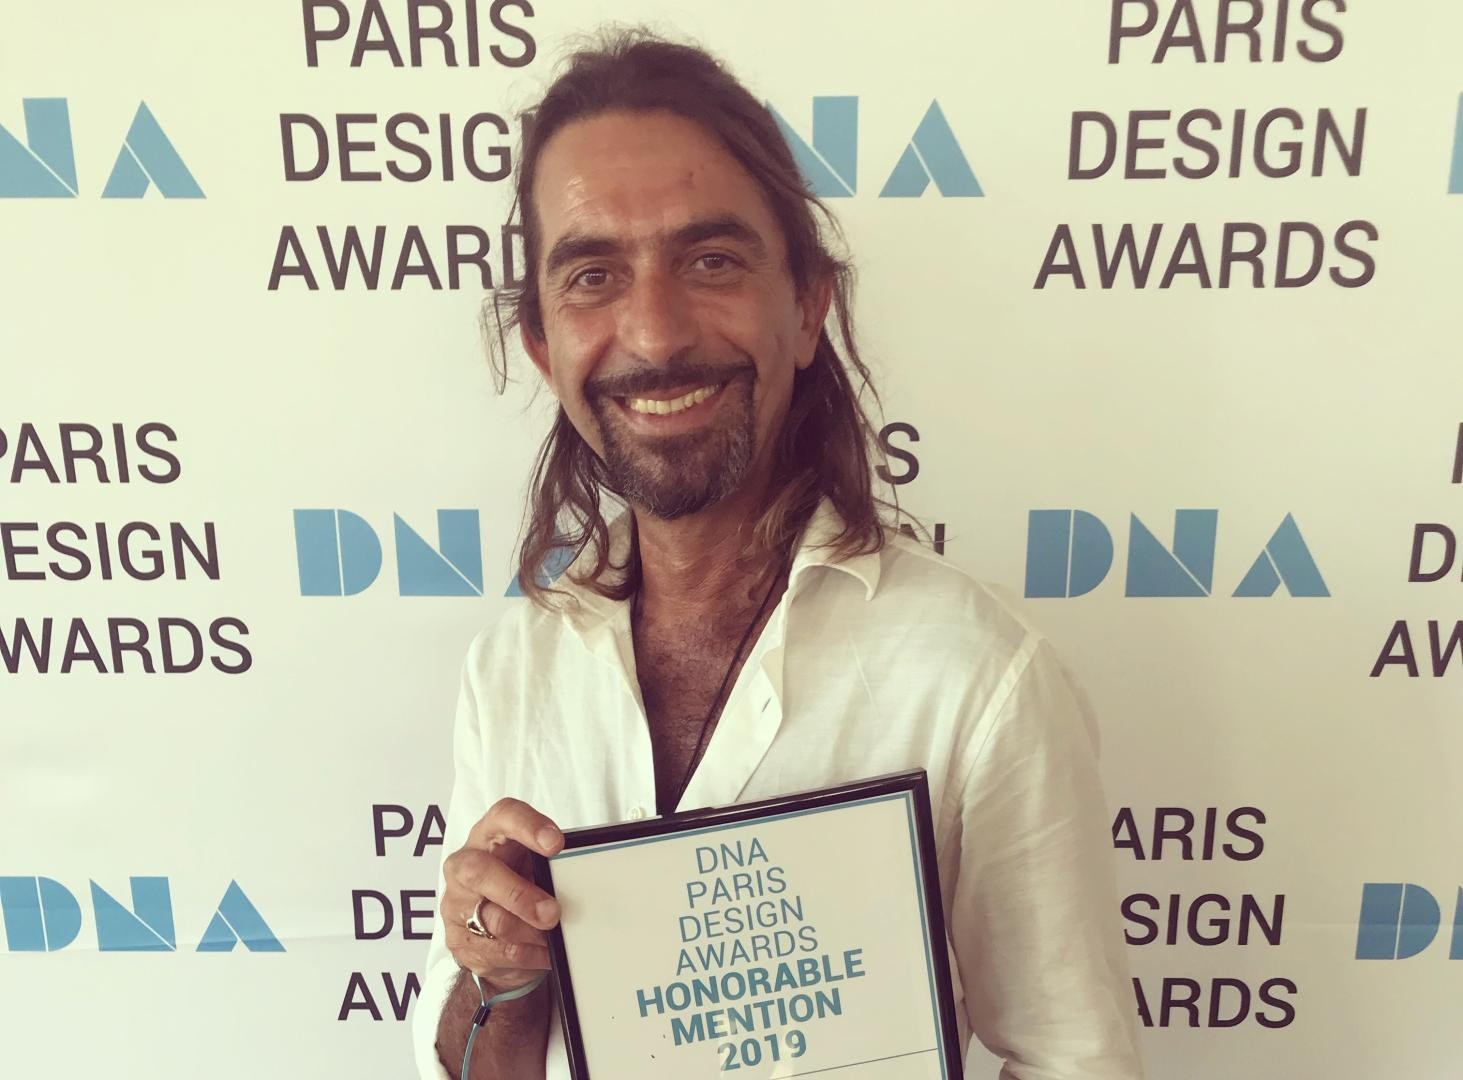 Giangi Razeto al DNA Paris 2019